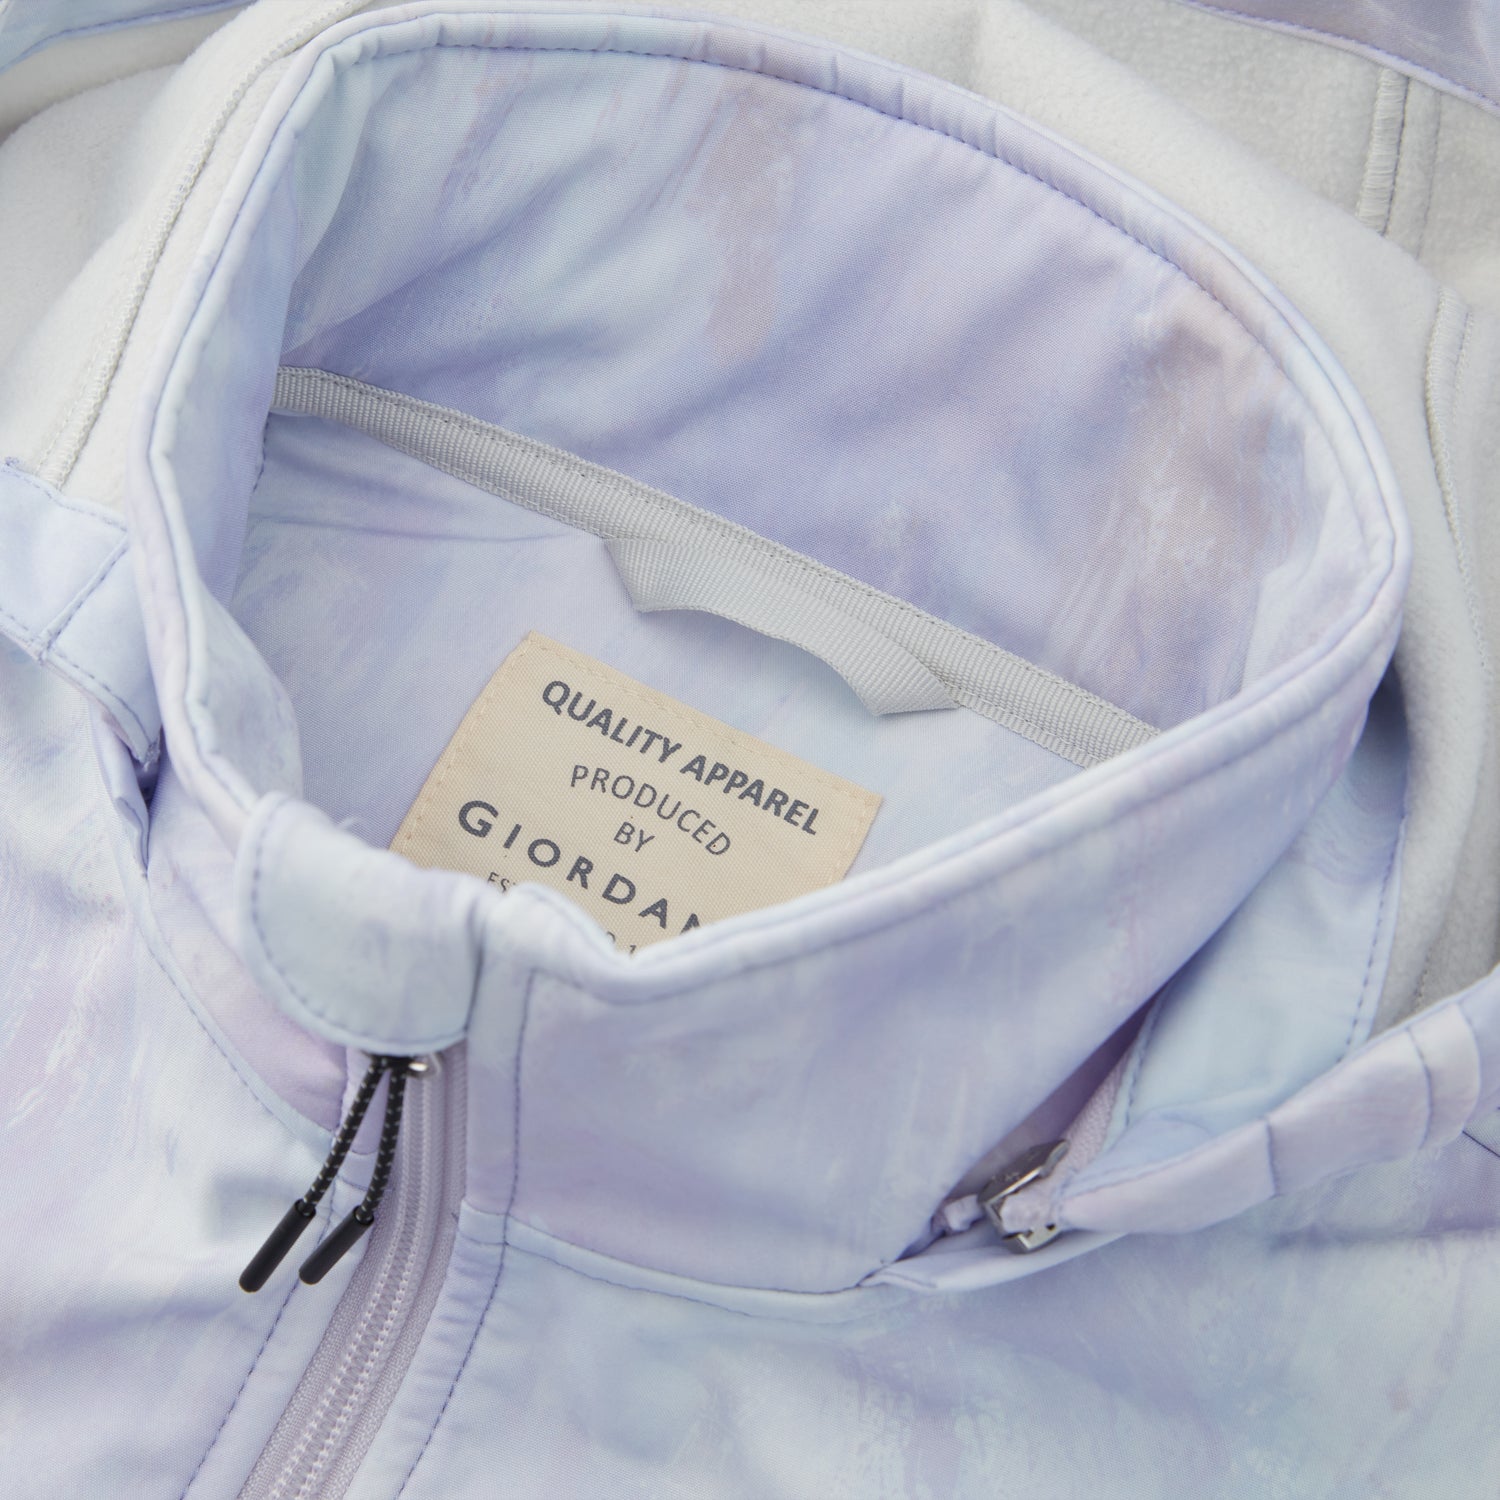 Women's G-Motion Softshell Jackets – Giordano Myanmar